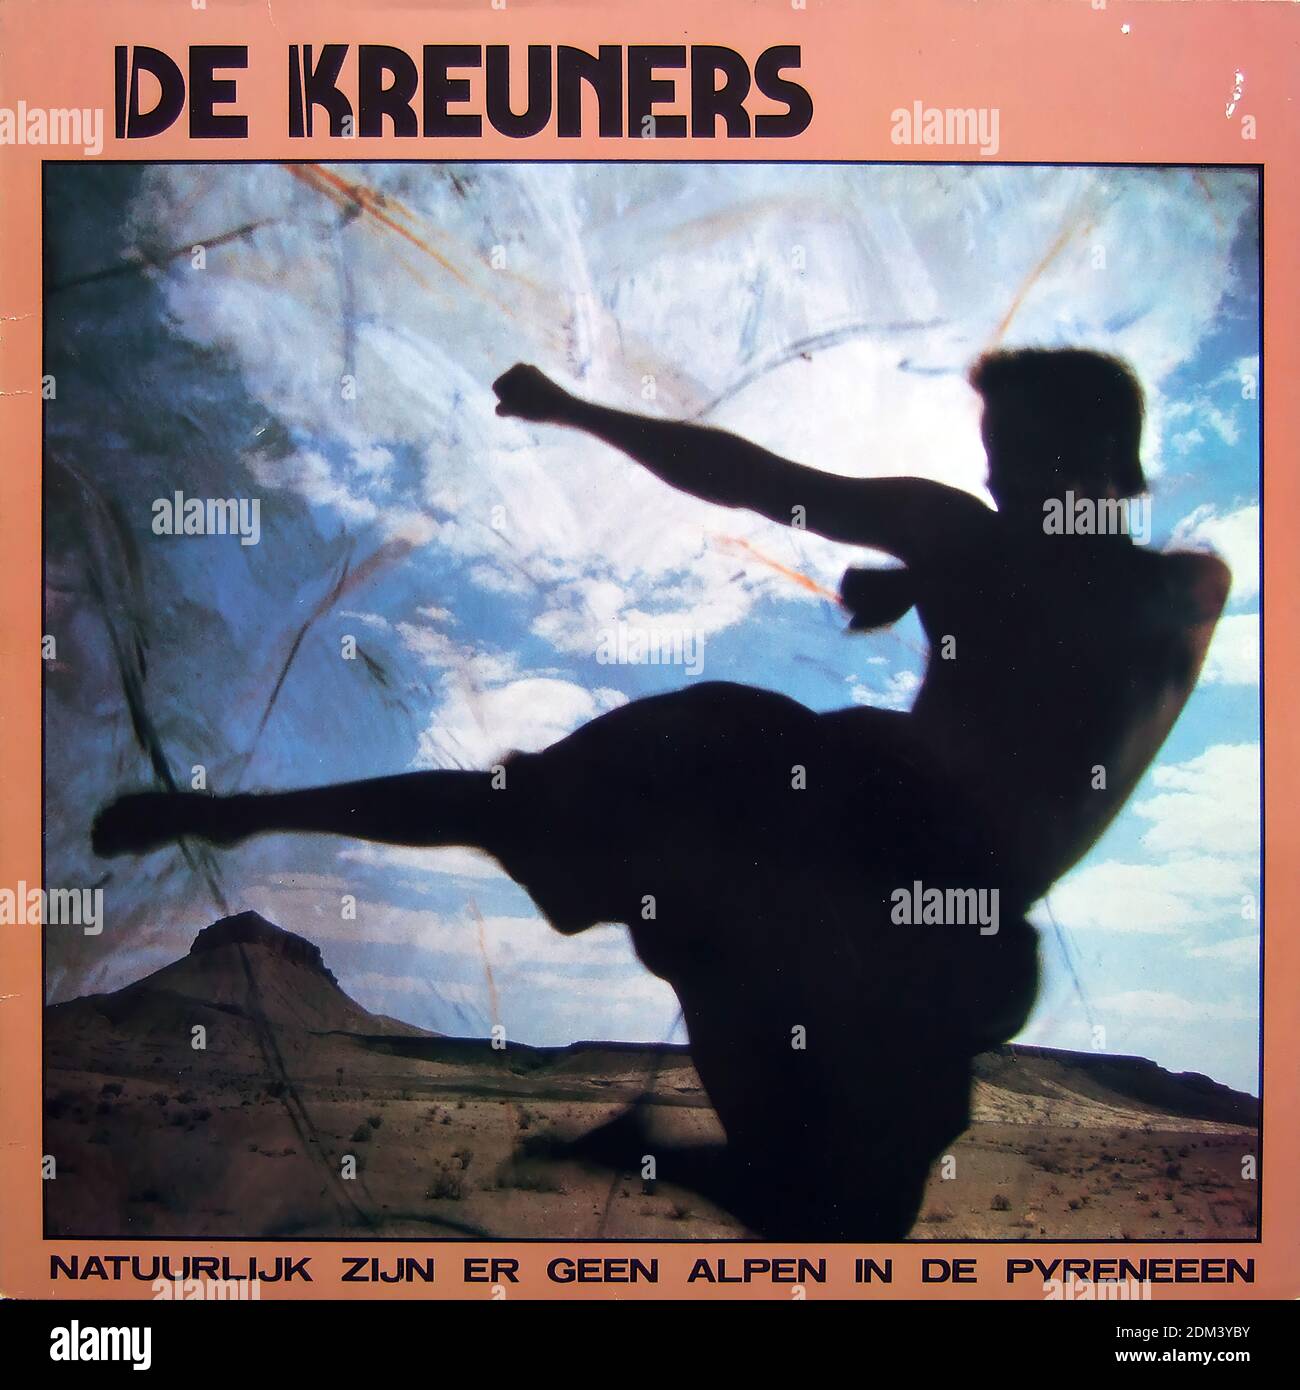 De Kreuners - Natuurlijk zijn er geen Alpen in de Pyreneen - copertina di album in vinile d'epoca Foto Stock